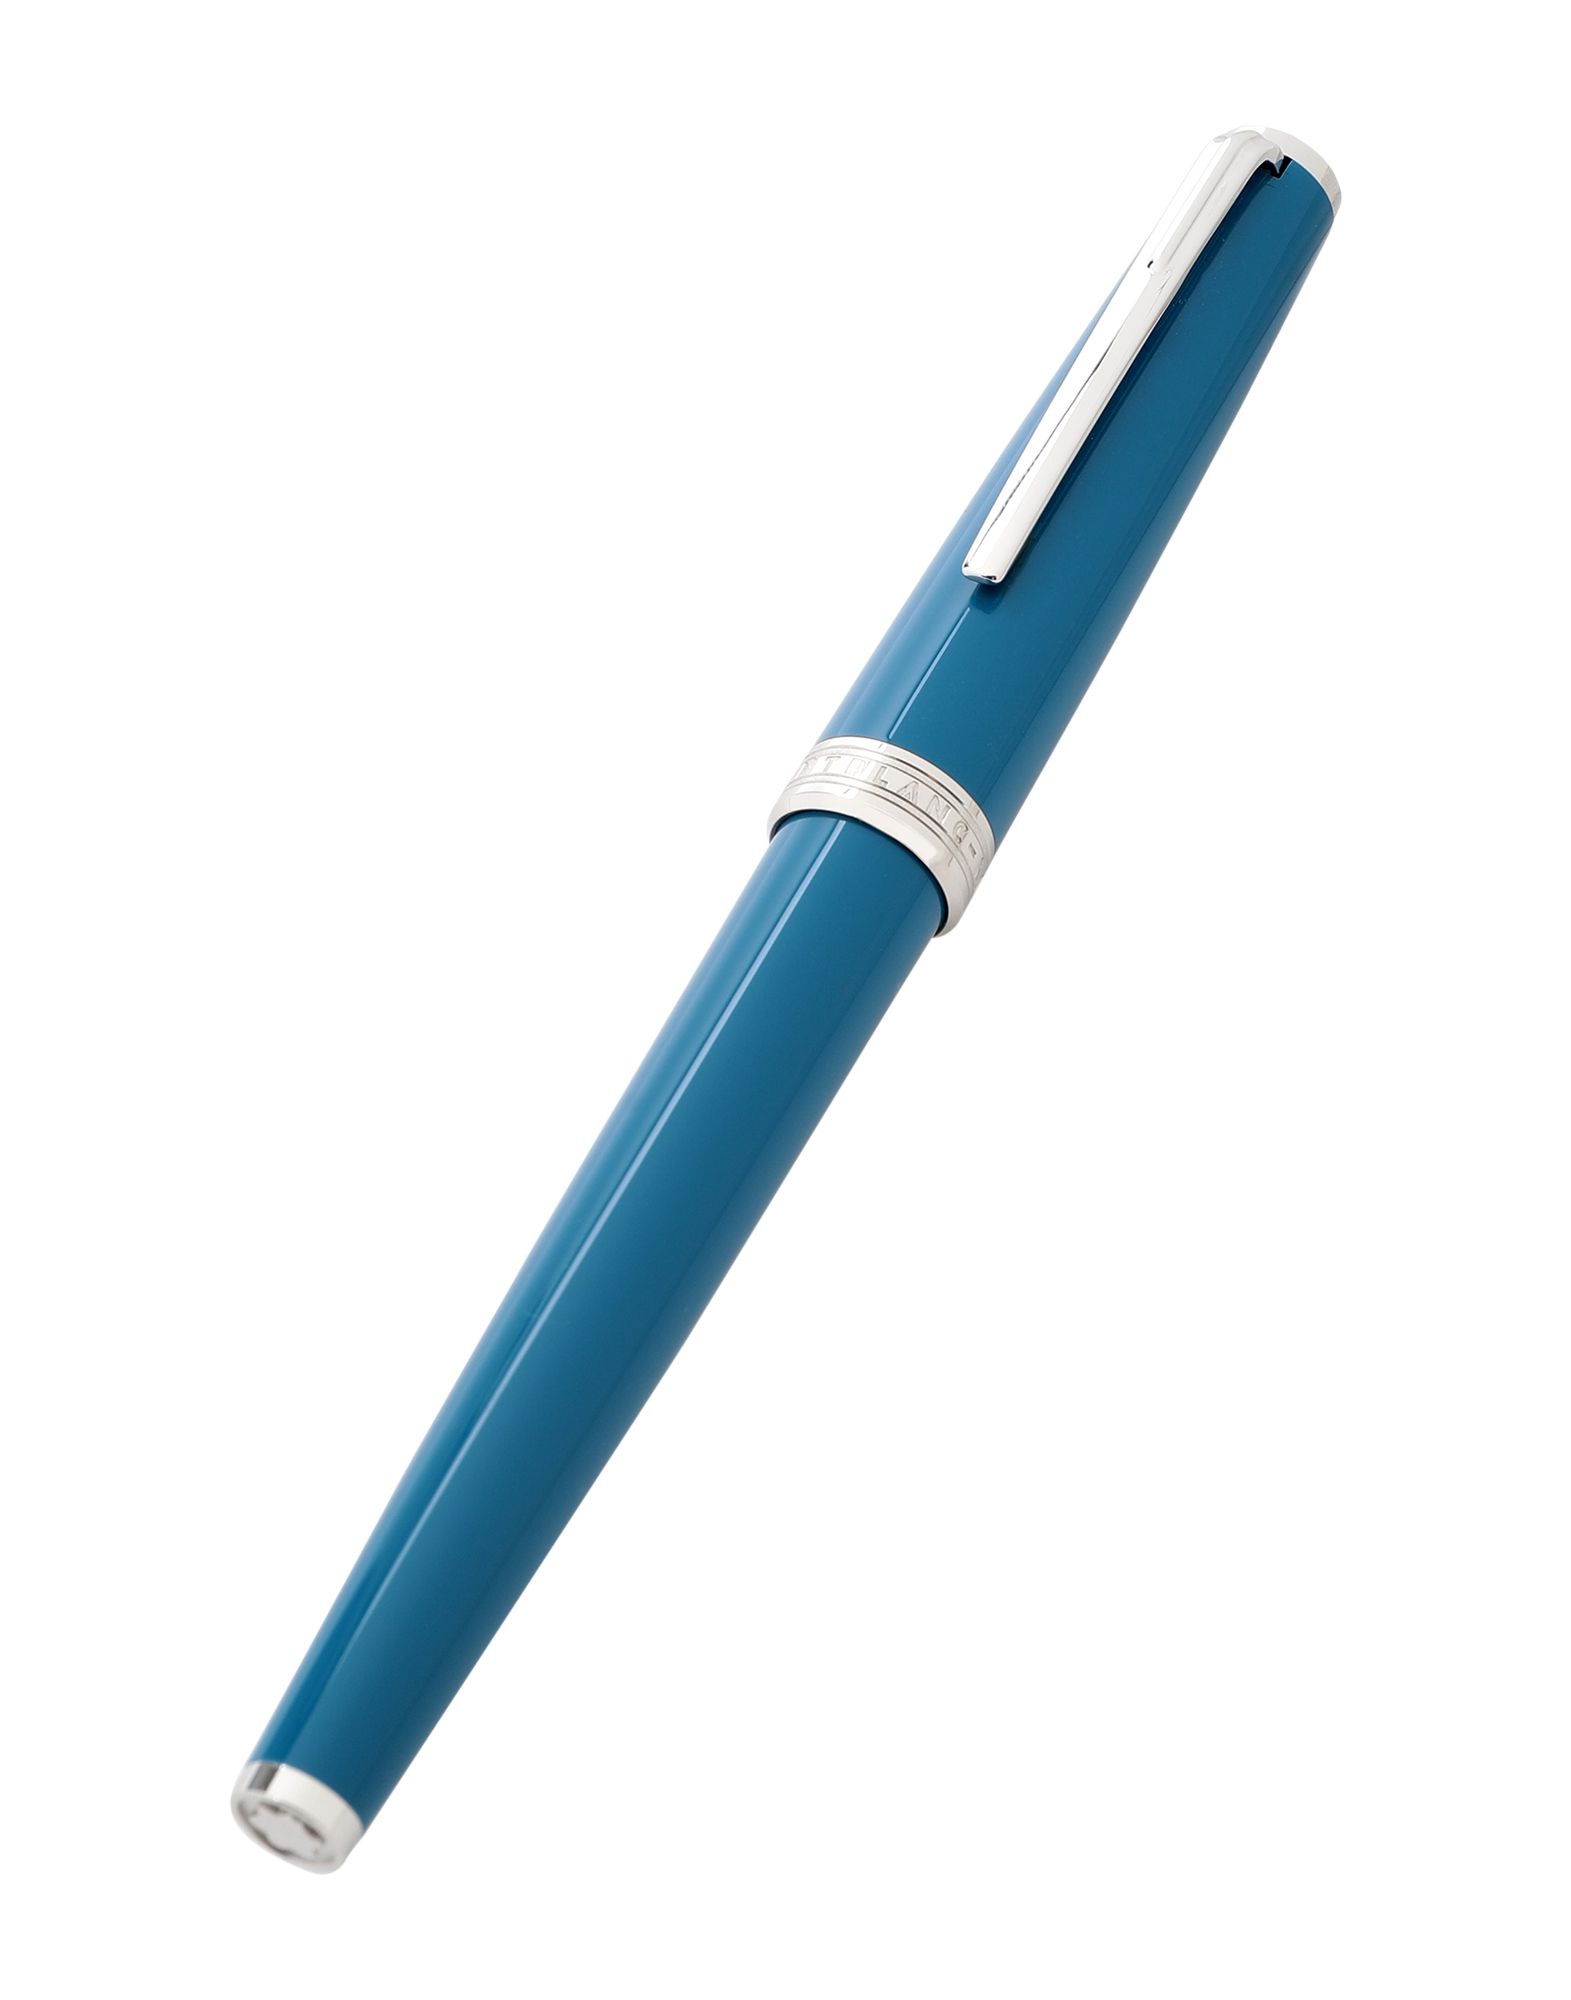 《期間限定セール開催中!》MONTBLANC メンズ 筆記用具 ディープジェード ポリウレタン PETROL BLUE ROLLERBALL